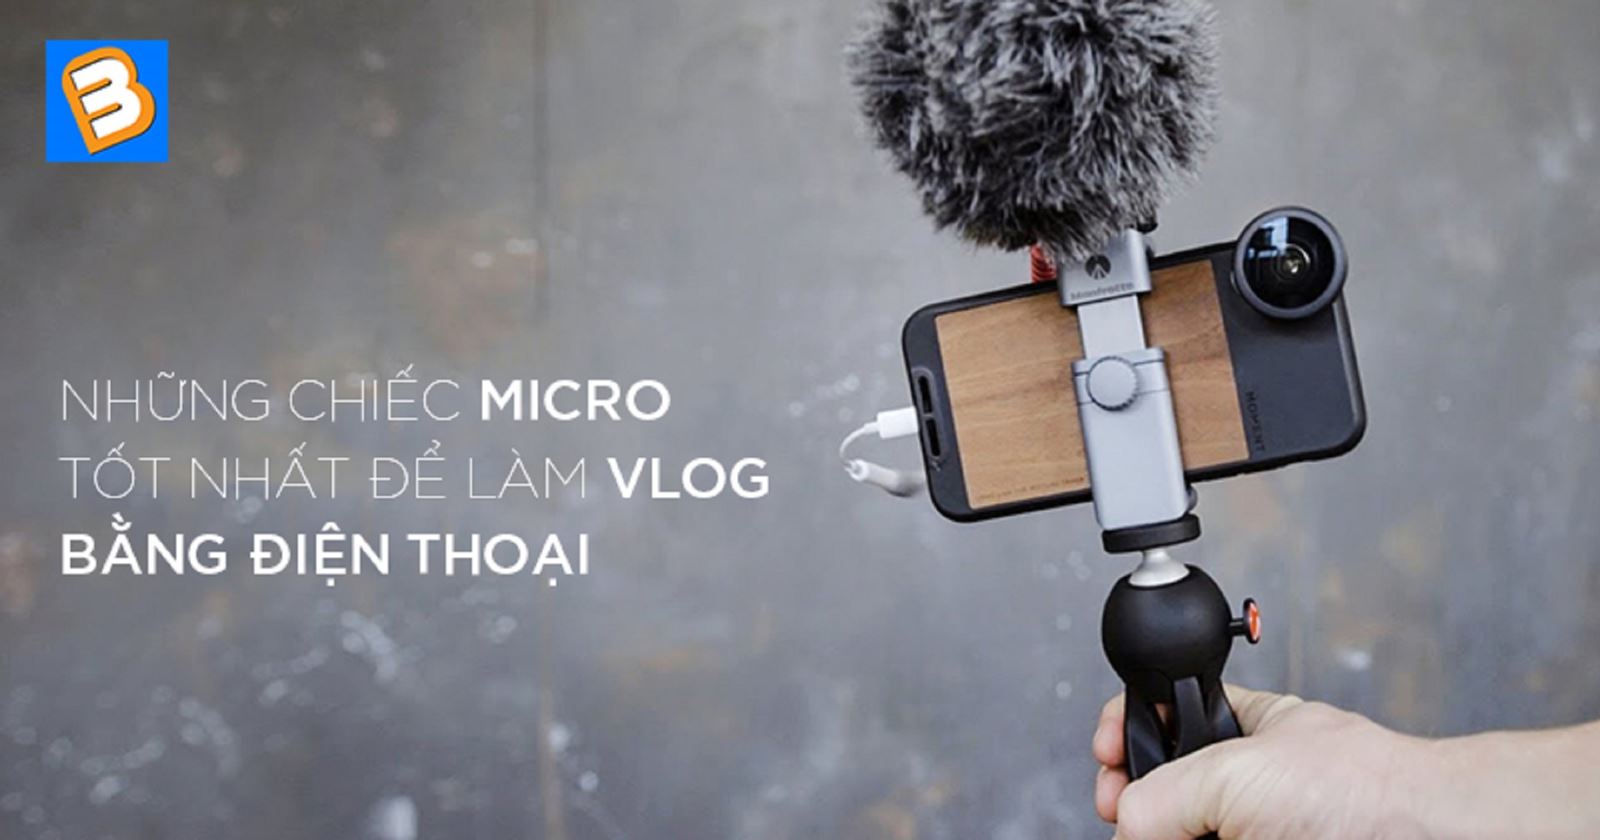 Những chiếc micro tốt nhất để làm vlog bằng điện thoại